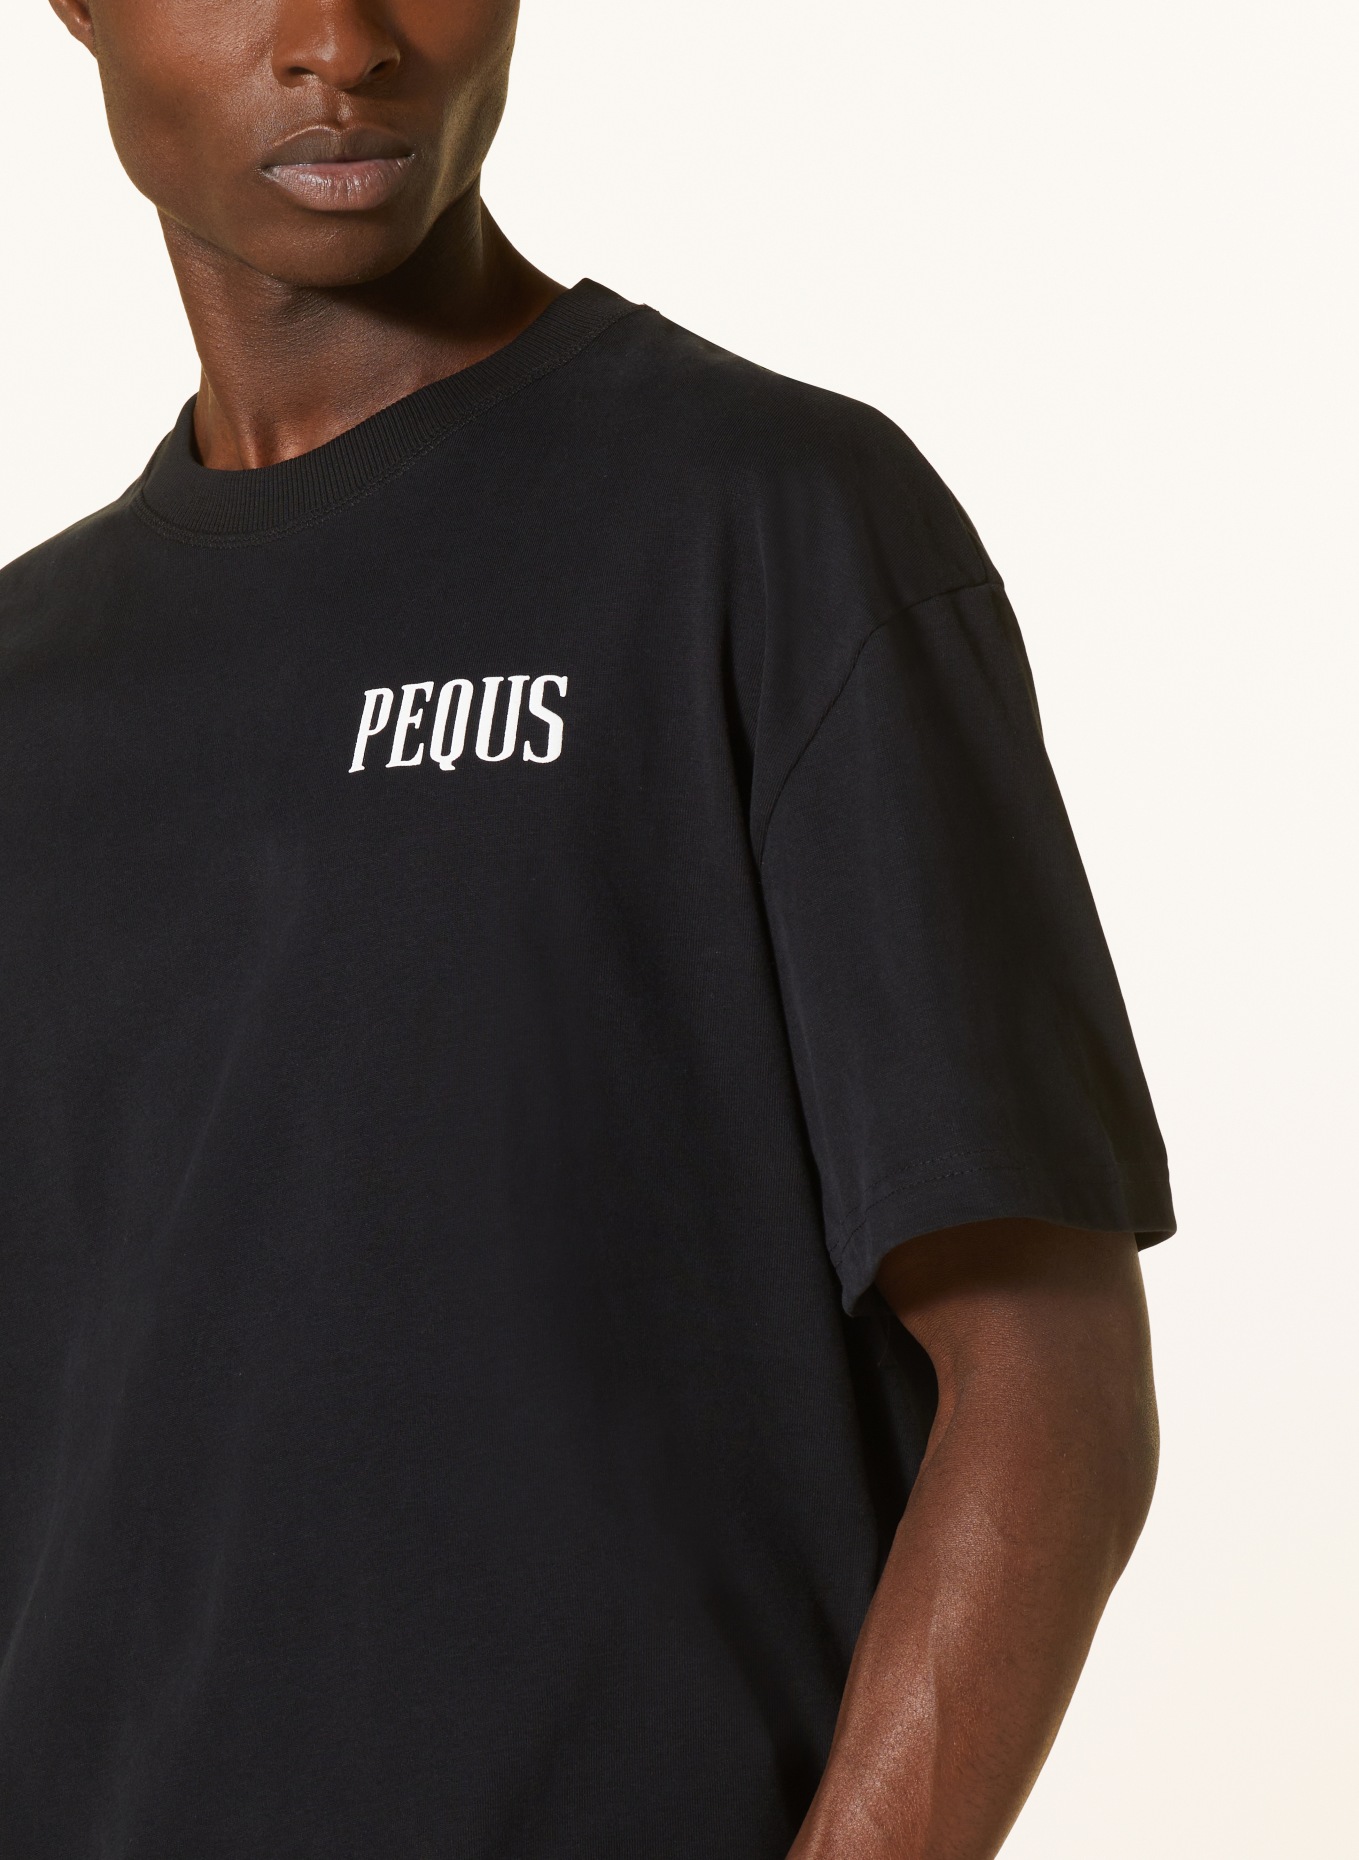 PEQUS T-shirt, Color: BLACK (Image 4)